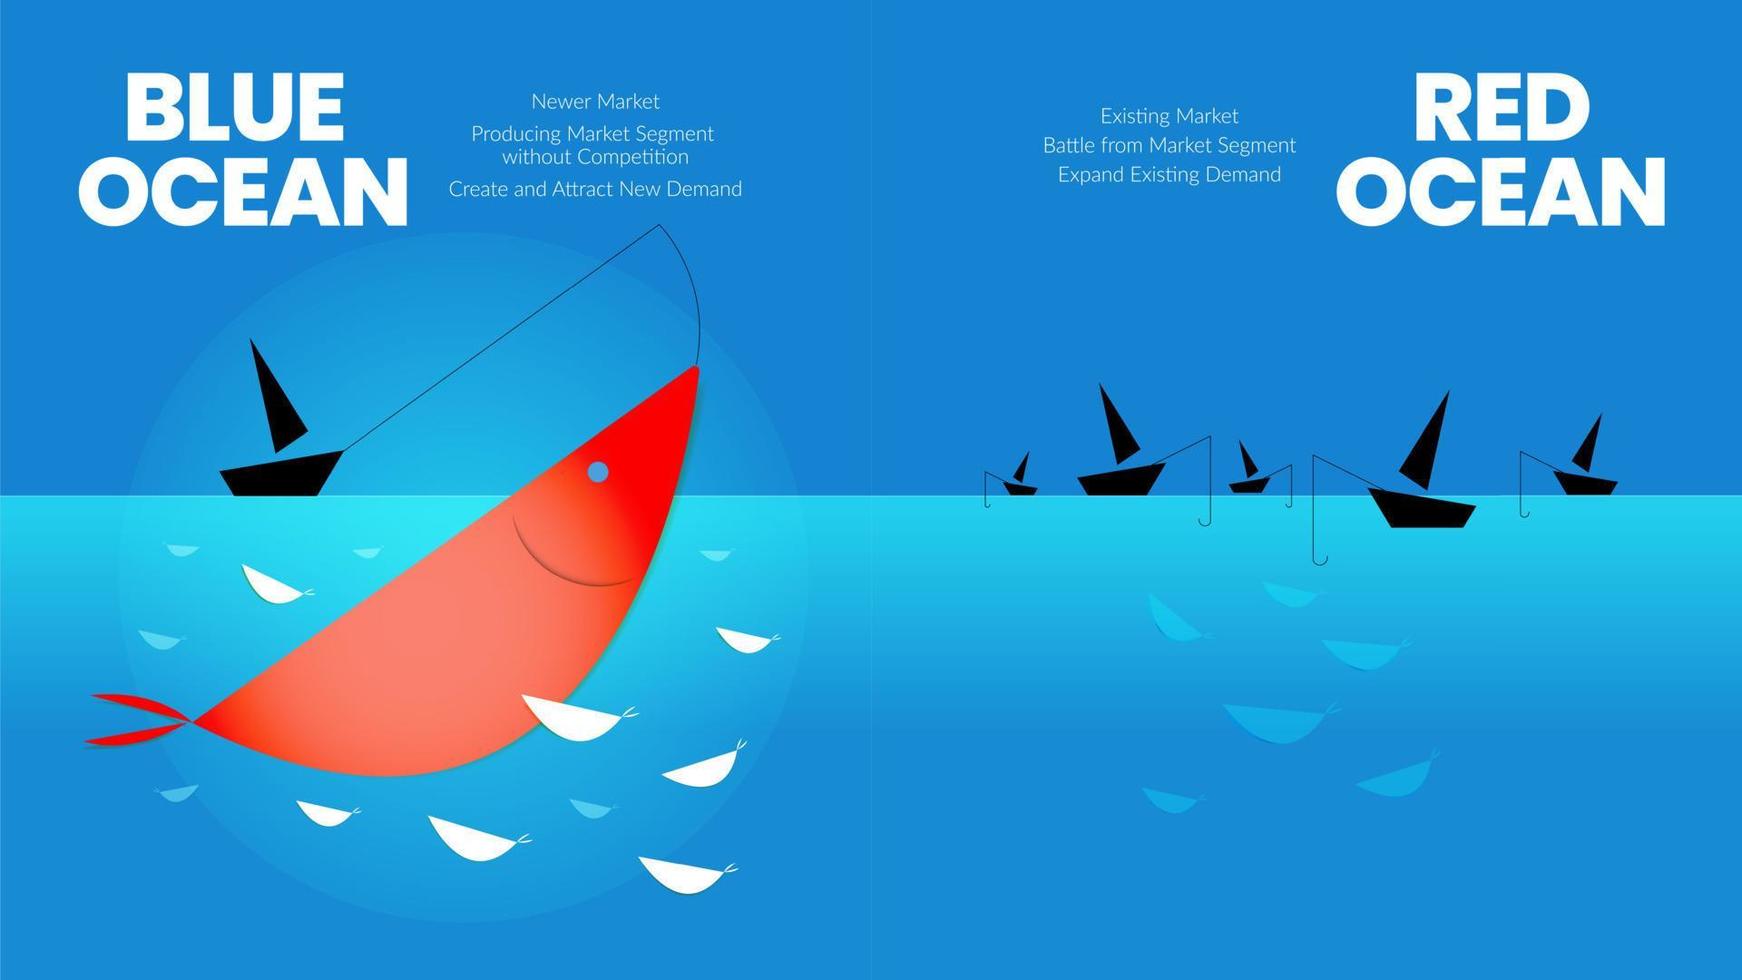 la presentazione del concetto di strategia dell'oceano blu è un elemento infografico vettoriale del marketing di nicchia. il Mar Rosso ha una sanguinosa competizione di massa e il pioniere del lato blu ha più vantaggi e opportunità